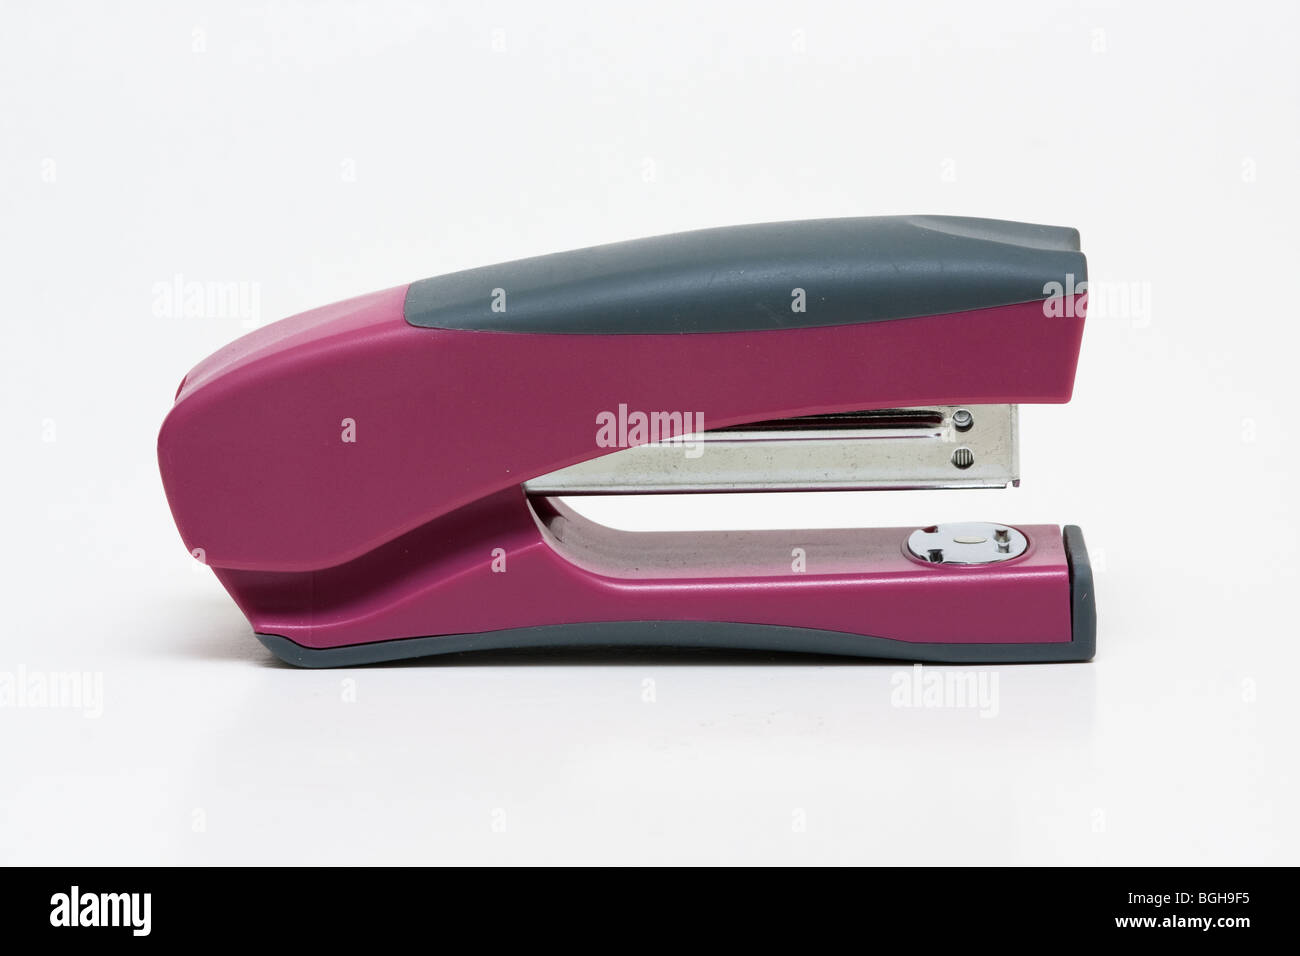 Purple Stapler with Built-in Sharpener